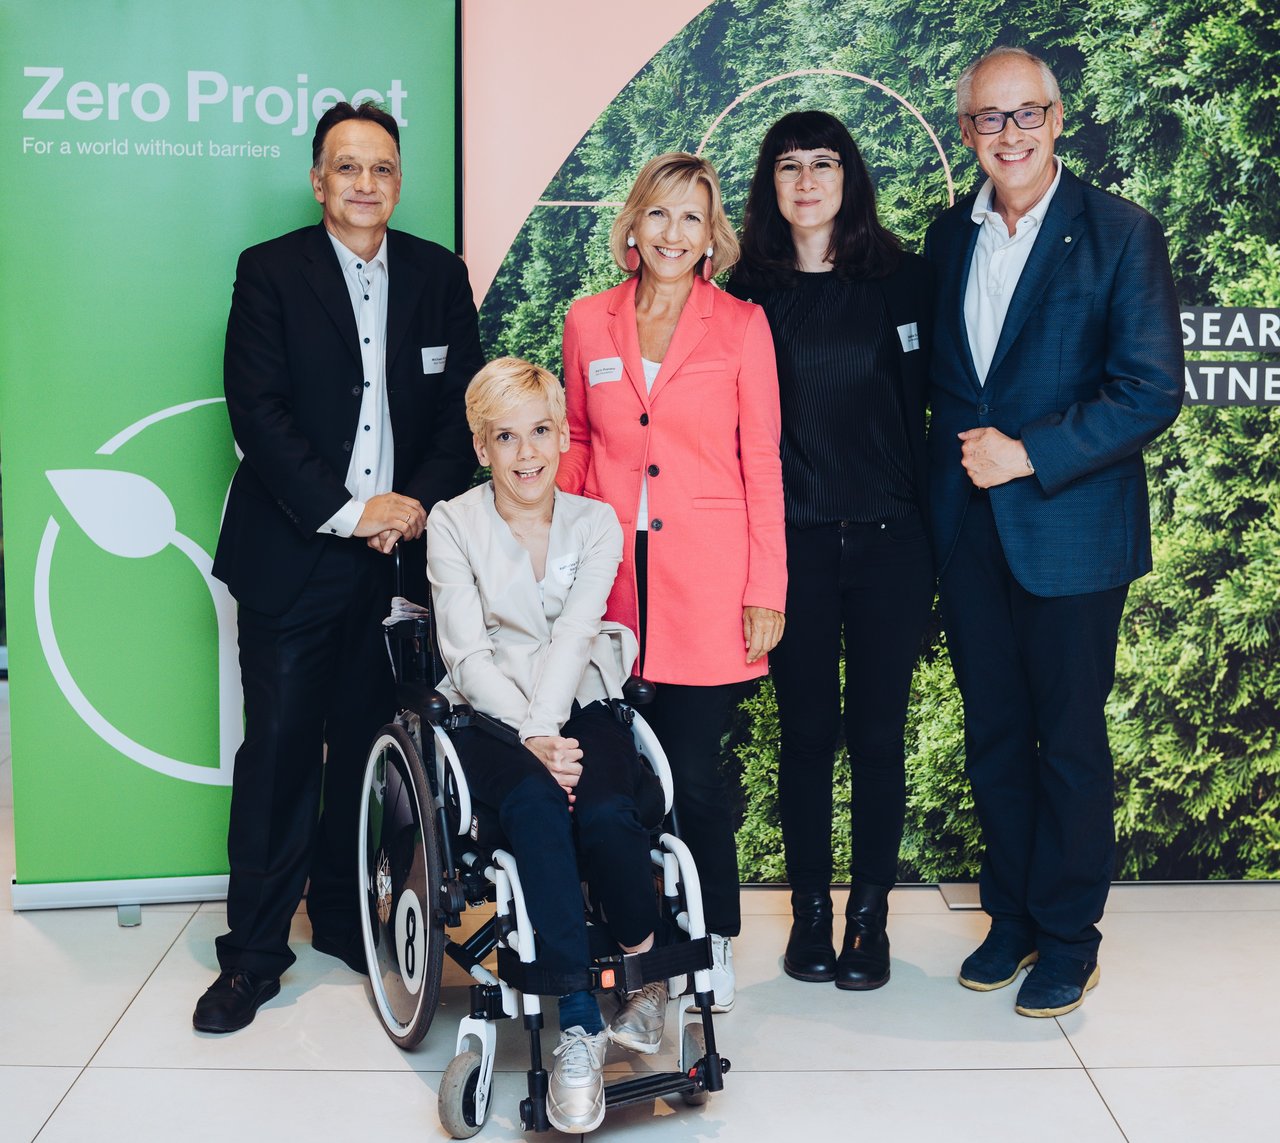 Gruppenfoto des Zero Project Austria Teams: Drei Frauen, eine davon im Rollstuhl und zwei Männer befinden sich vor dem Zero Project Rollup.